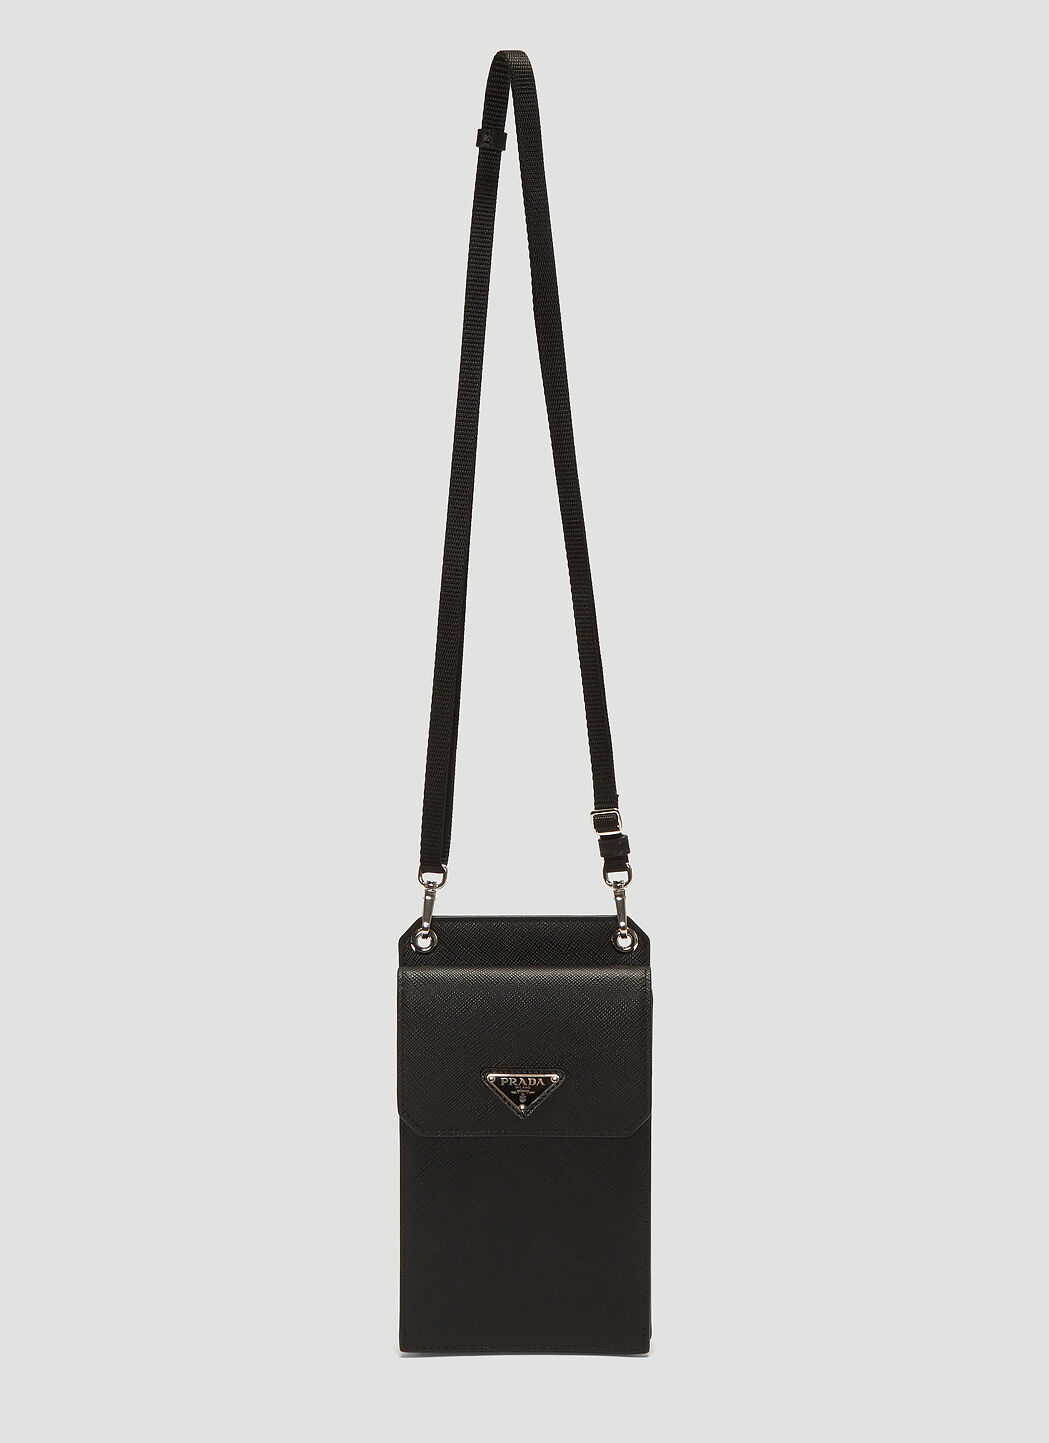 Saint Laurent Saffiano Leather Phone Case Black sla0138034